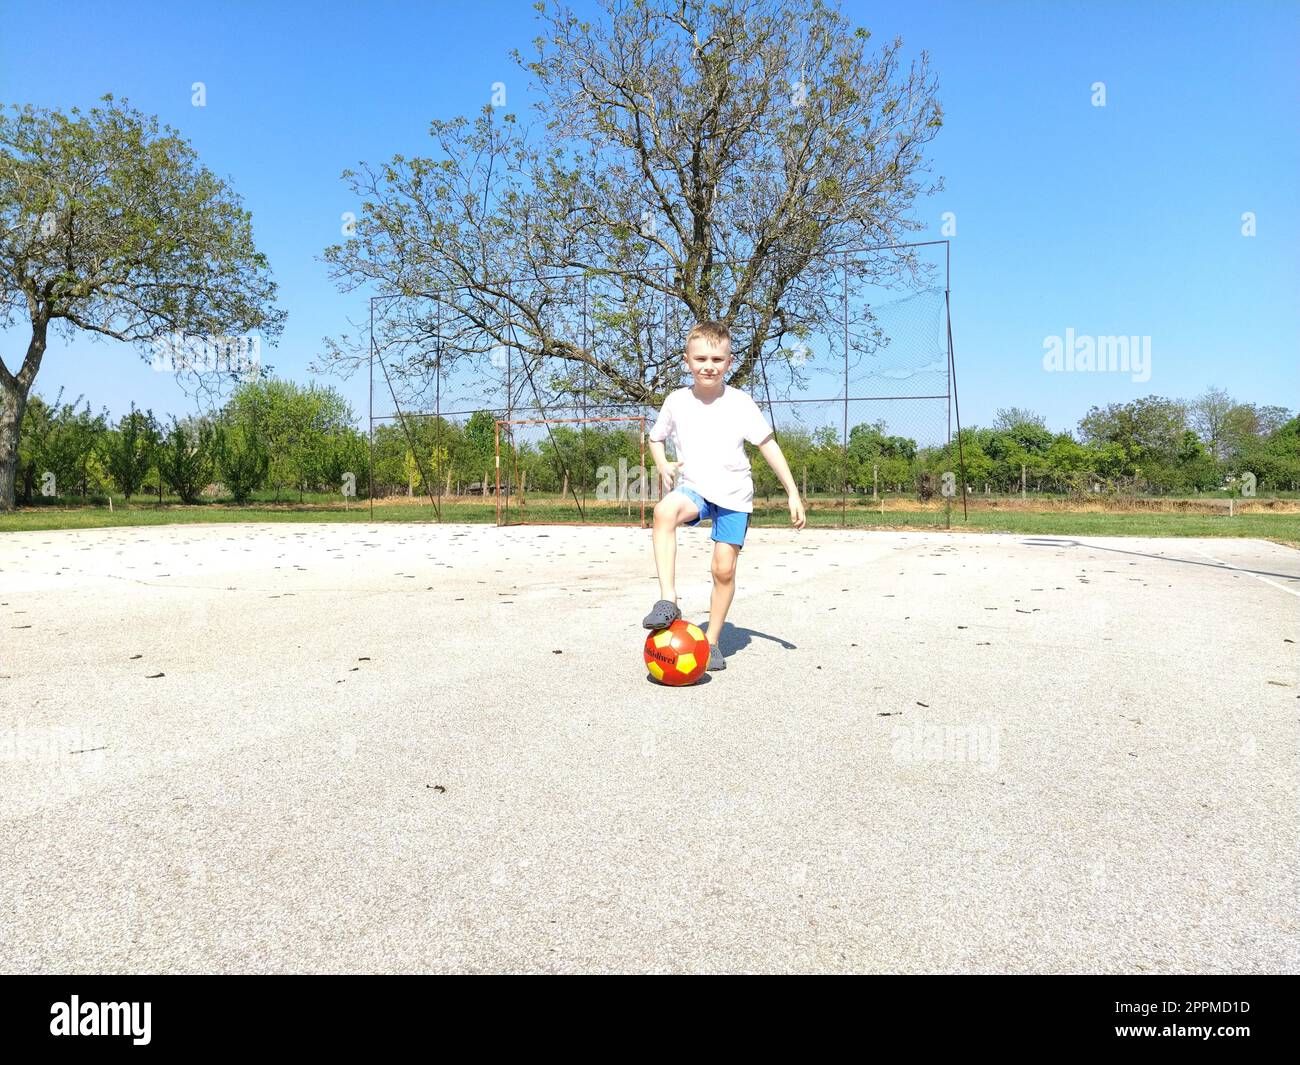 Sremska Mitrovica, Serbie. 6 juin 2020. Un garçon joue au ballon sur le terrain de jeu. Terrain de sport en asphalte. Un enfant dans un t-shirt blanc. Enfant en bas âge aux cheveux blonds, 7 ans. Courir, donner des coups de pied et faire des exercices Banque D'Images